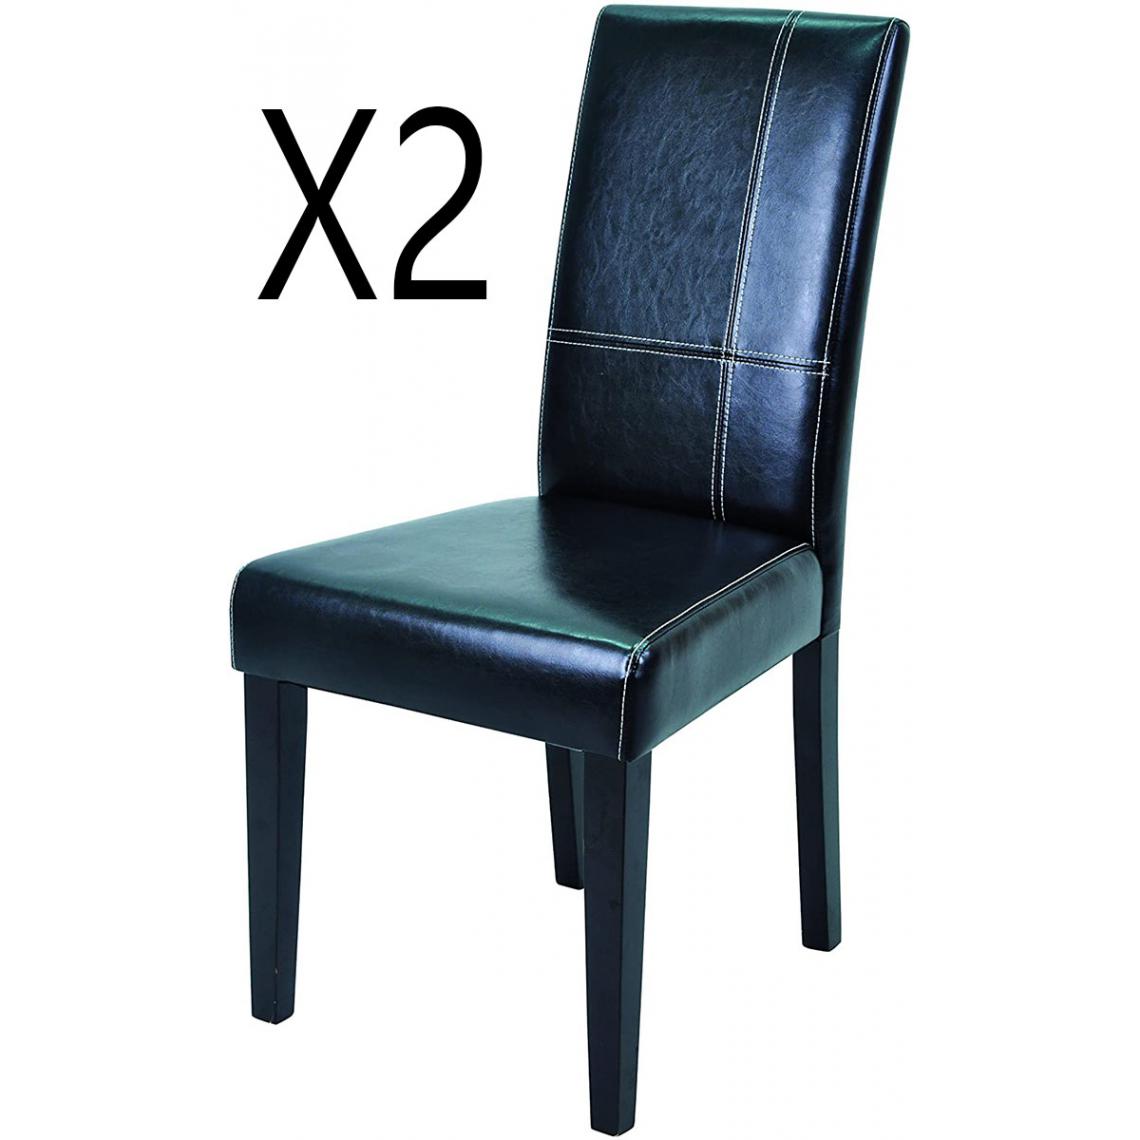 Pegane - Lot de 2 chaises coloris noir mat - 45 x 55.5 x 94 cm -PEGANE- - Chaises